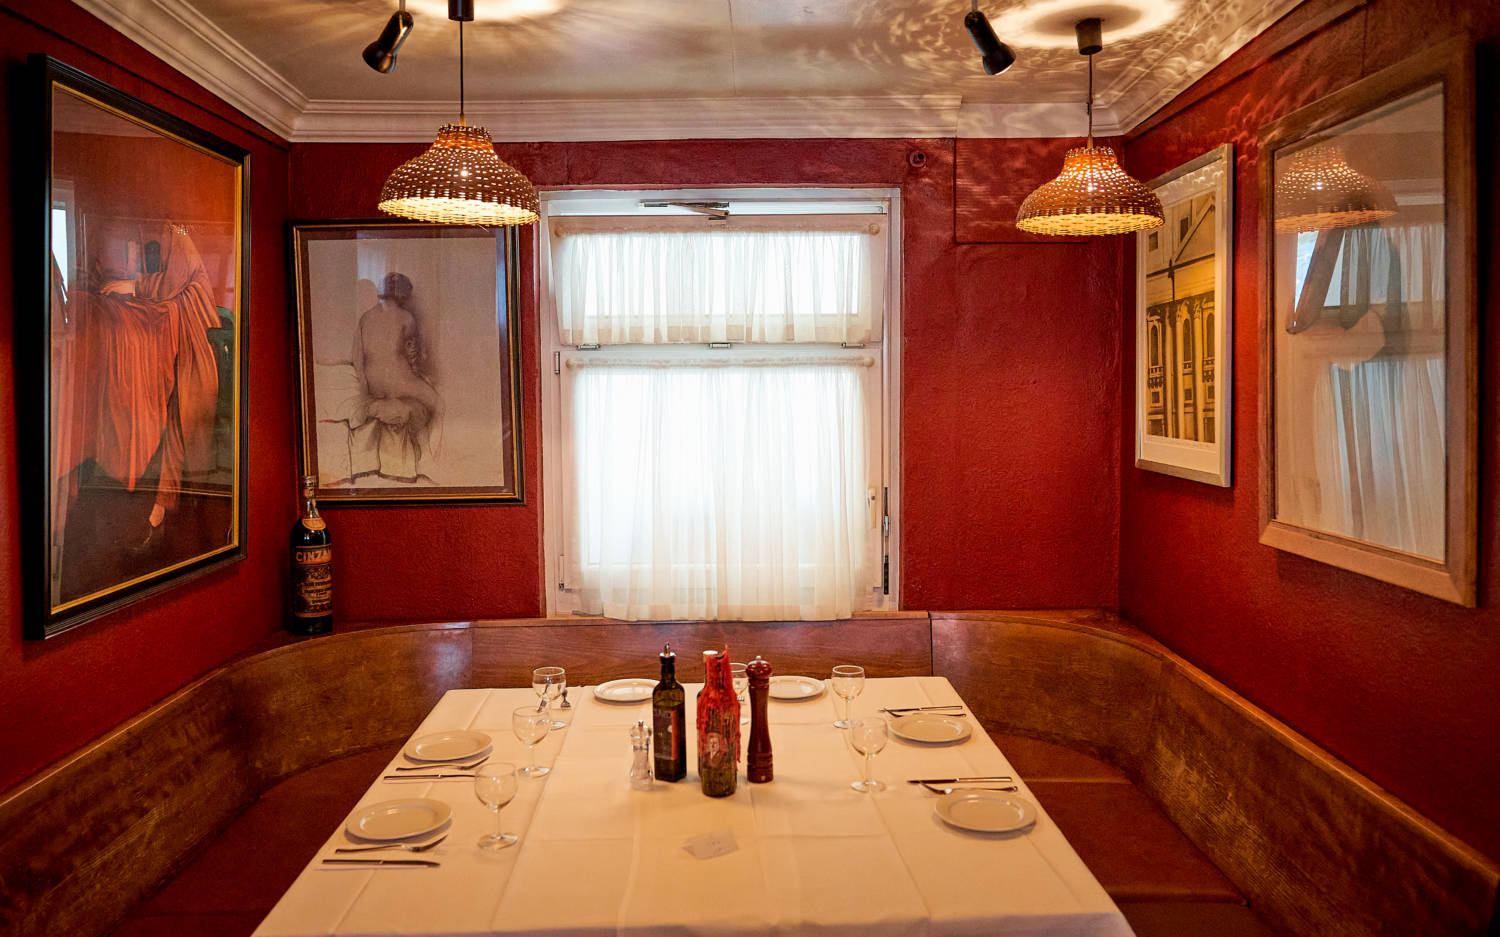 gemütliche Atmosphäre im italienischen Restaurant Cuneo/ ©Marc Sill